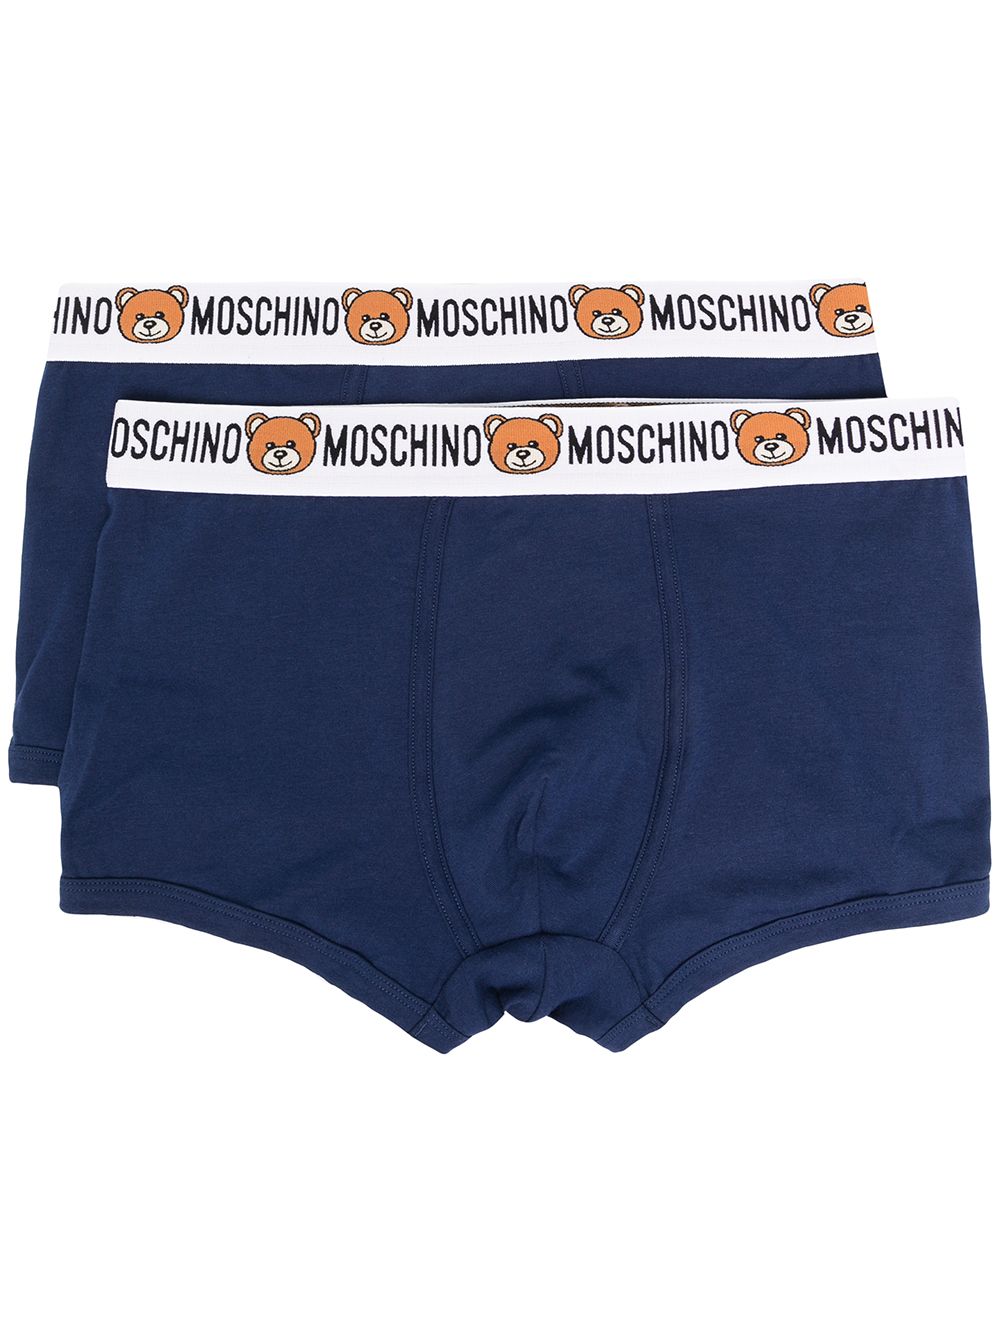 Moschino teddy logo waistband briefs - Blue von Moschino